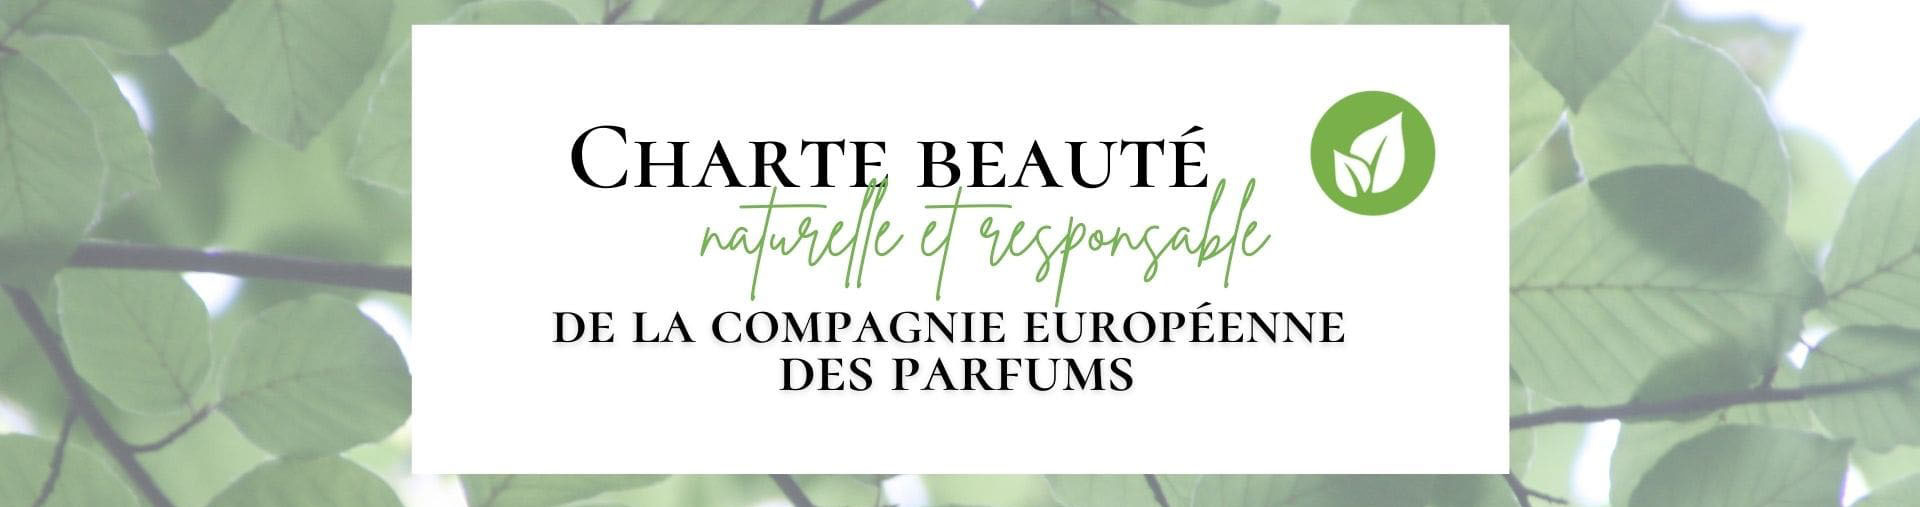 Charte beauté naturelle et responsable de la Compagnie Européenne des Parfums